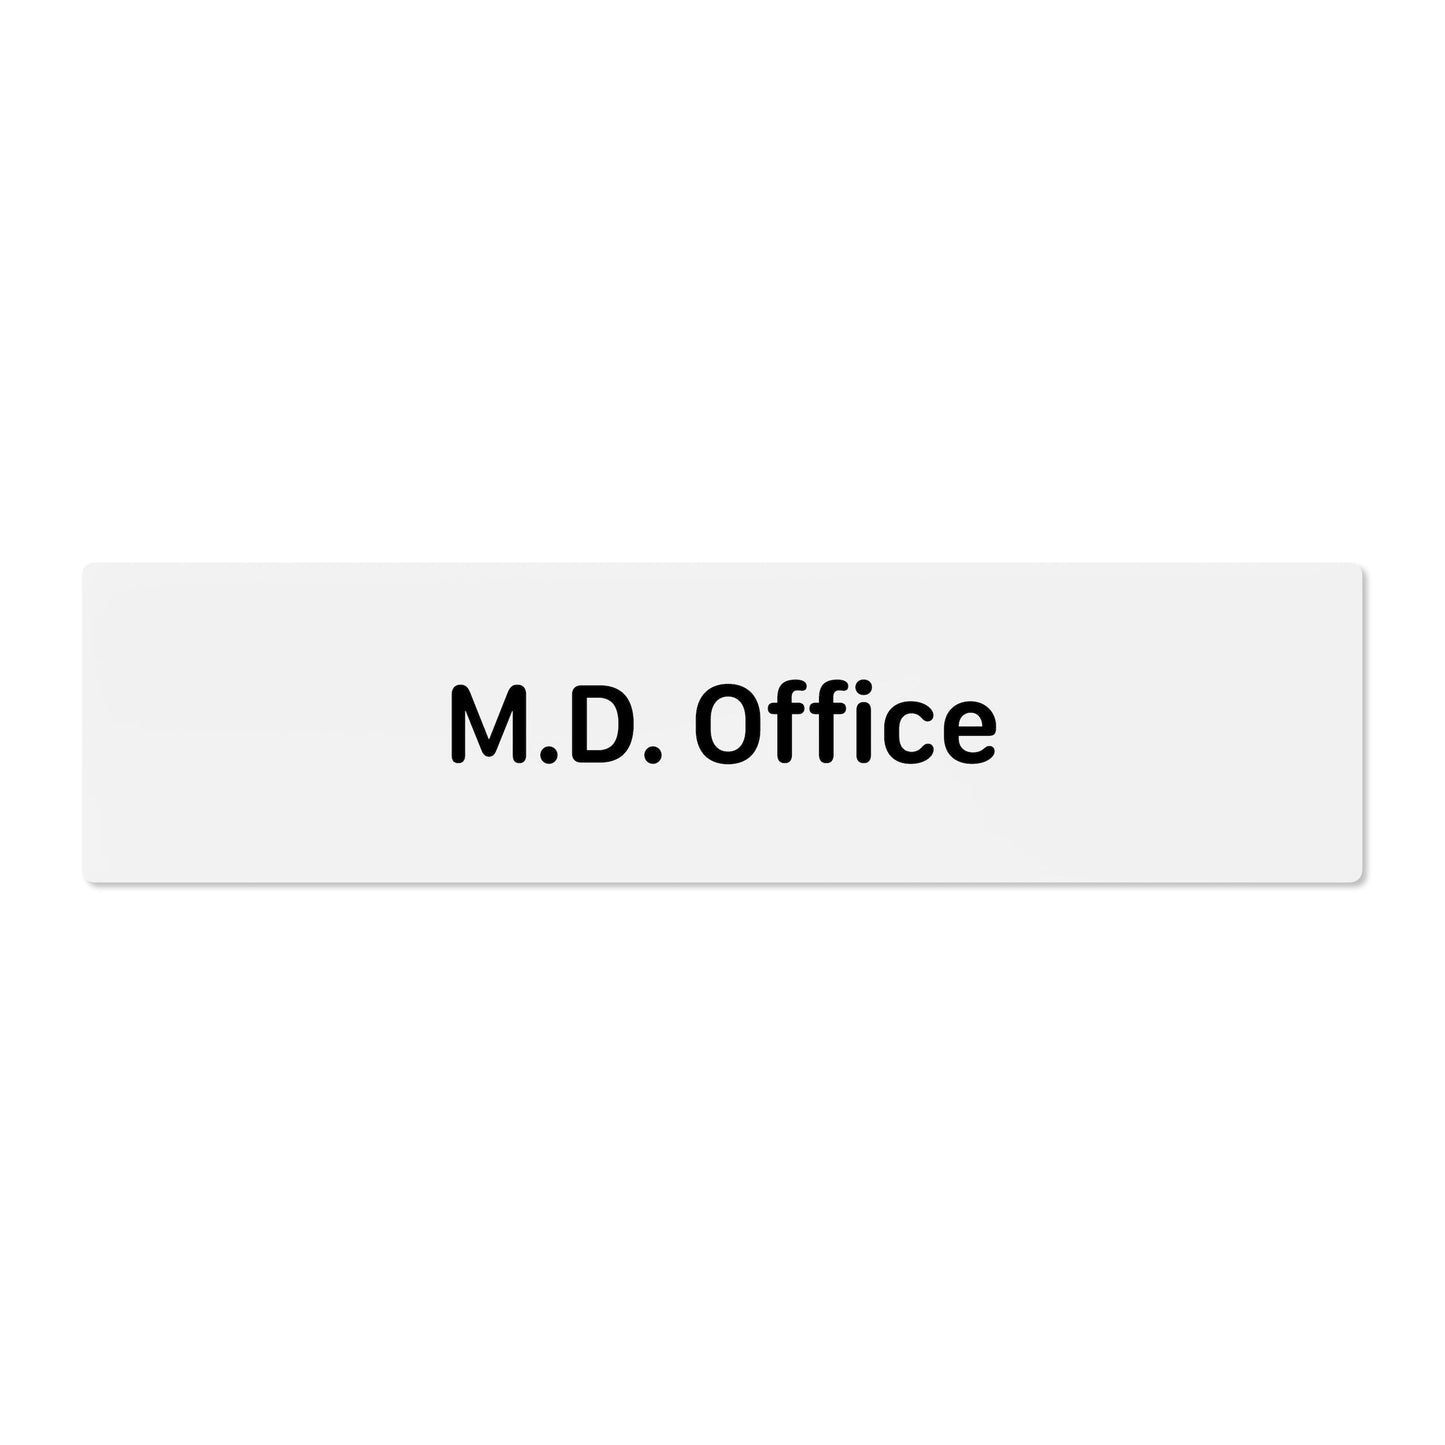 M.D. Office